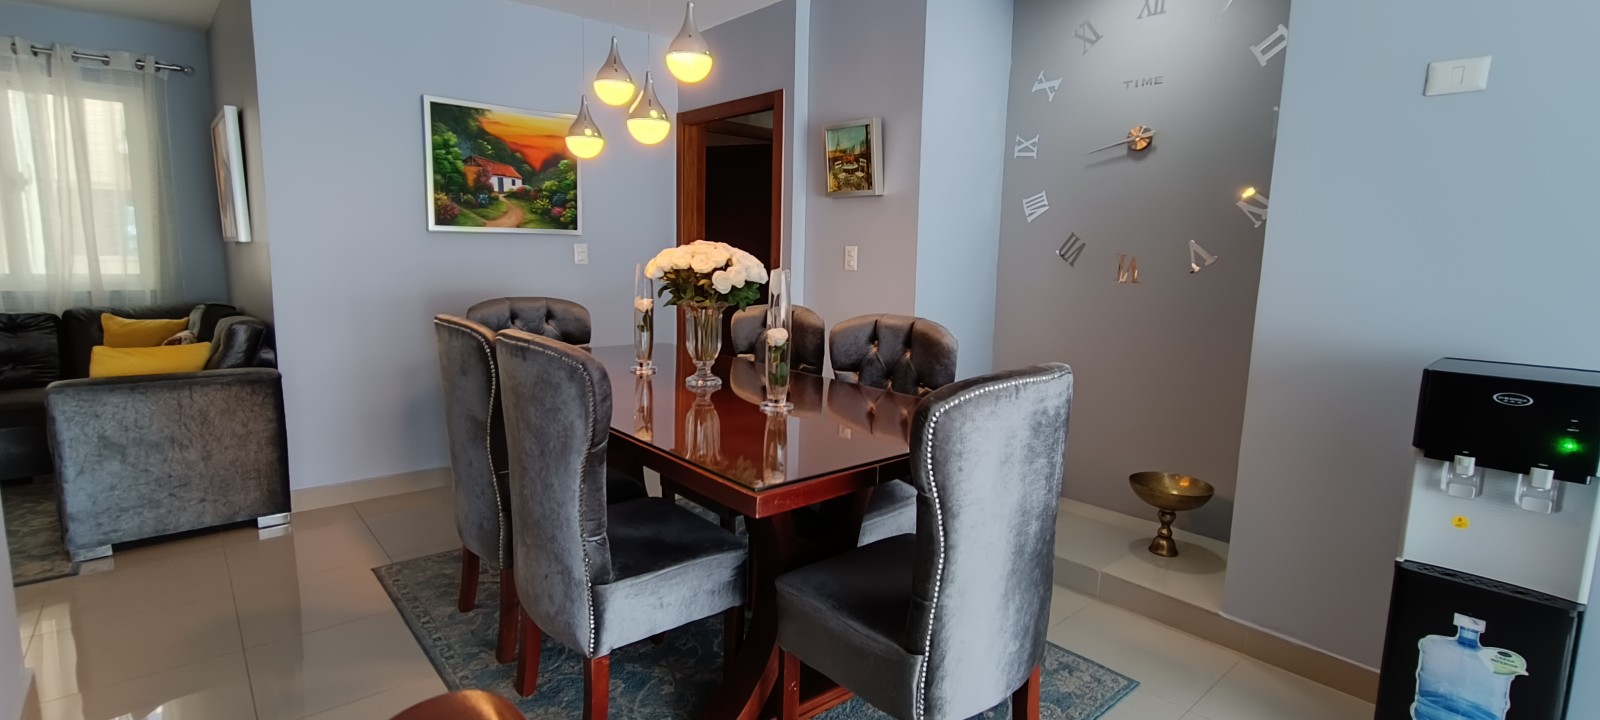 apartamentos - Airbnb AMUEBLADO en villa Olga seguro y confort 7